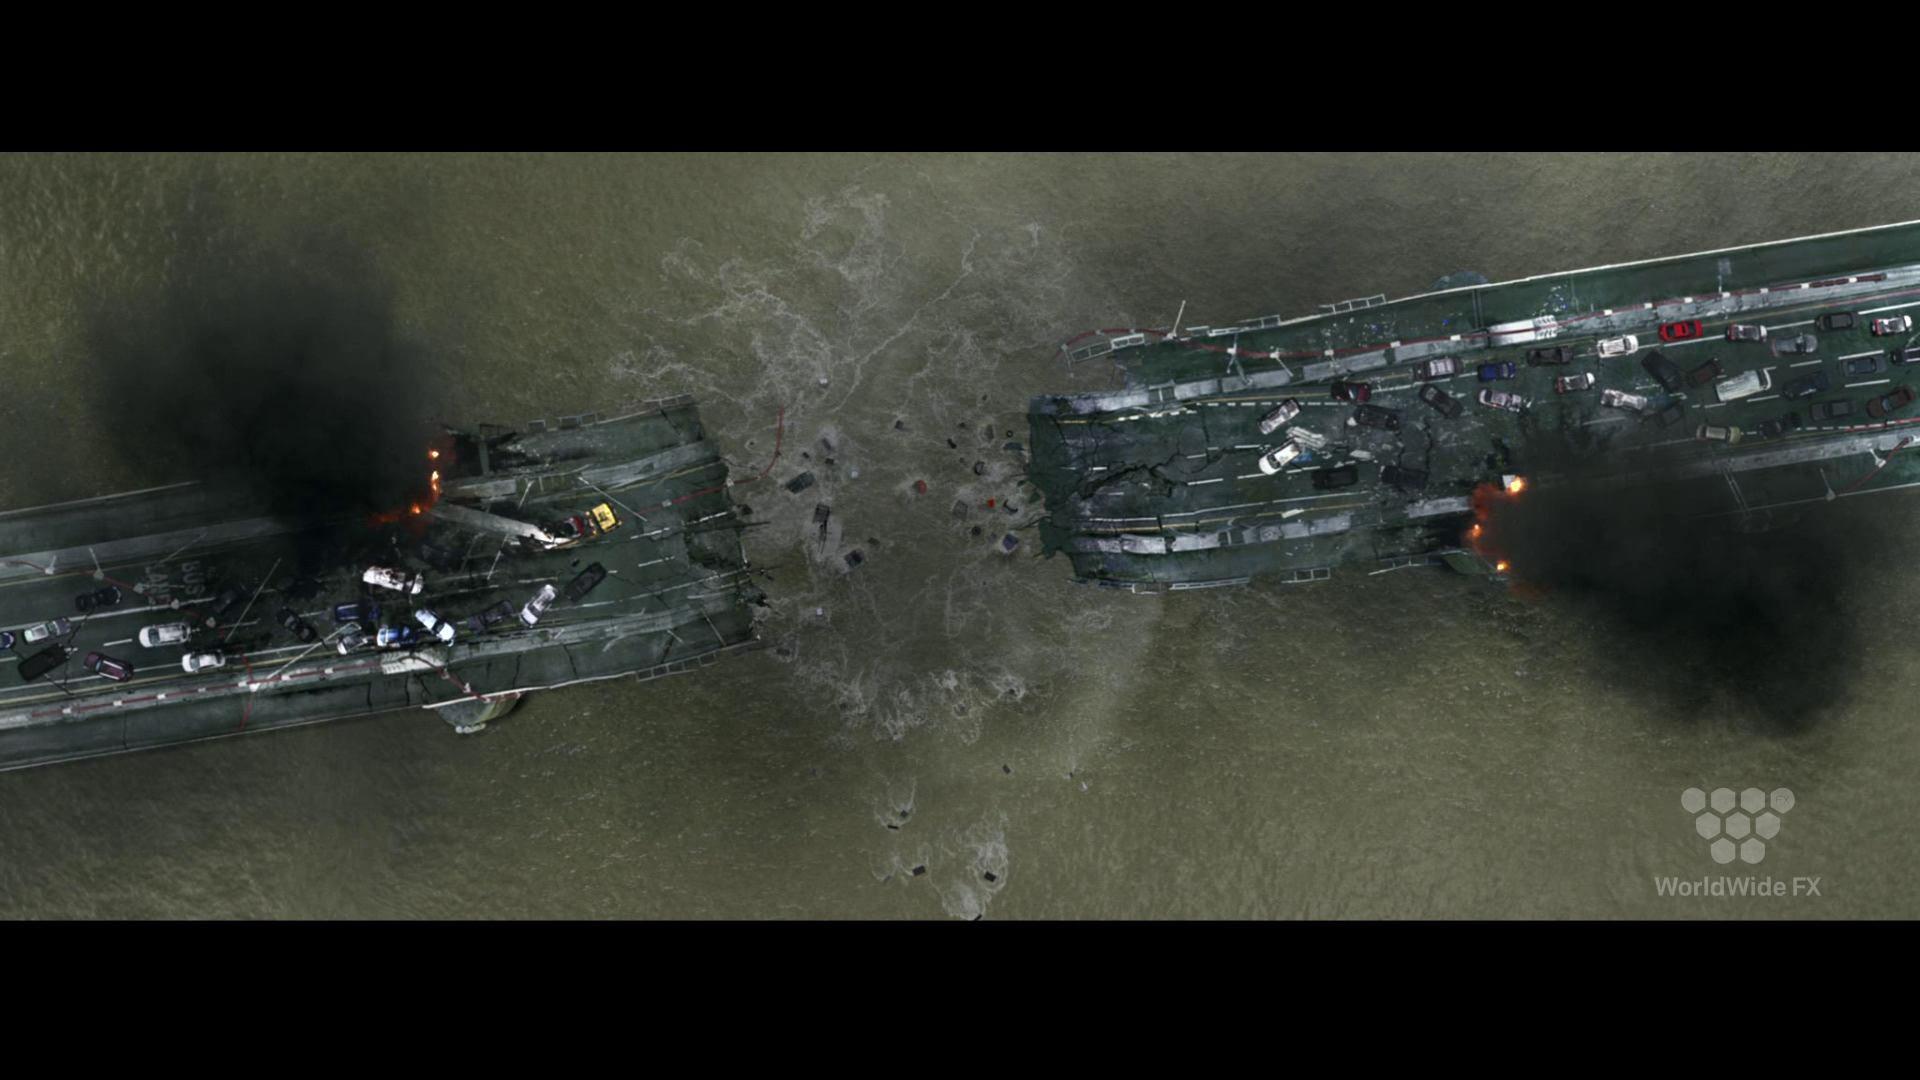 London Has Fallen VFX Breakdown by Worldwide FX – Chelsea Bridge Sequence